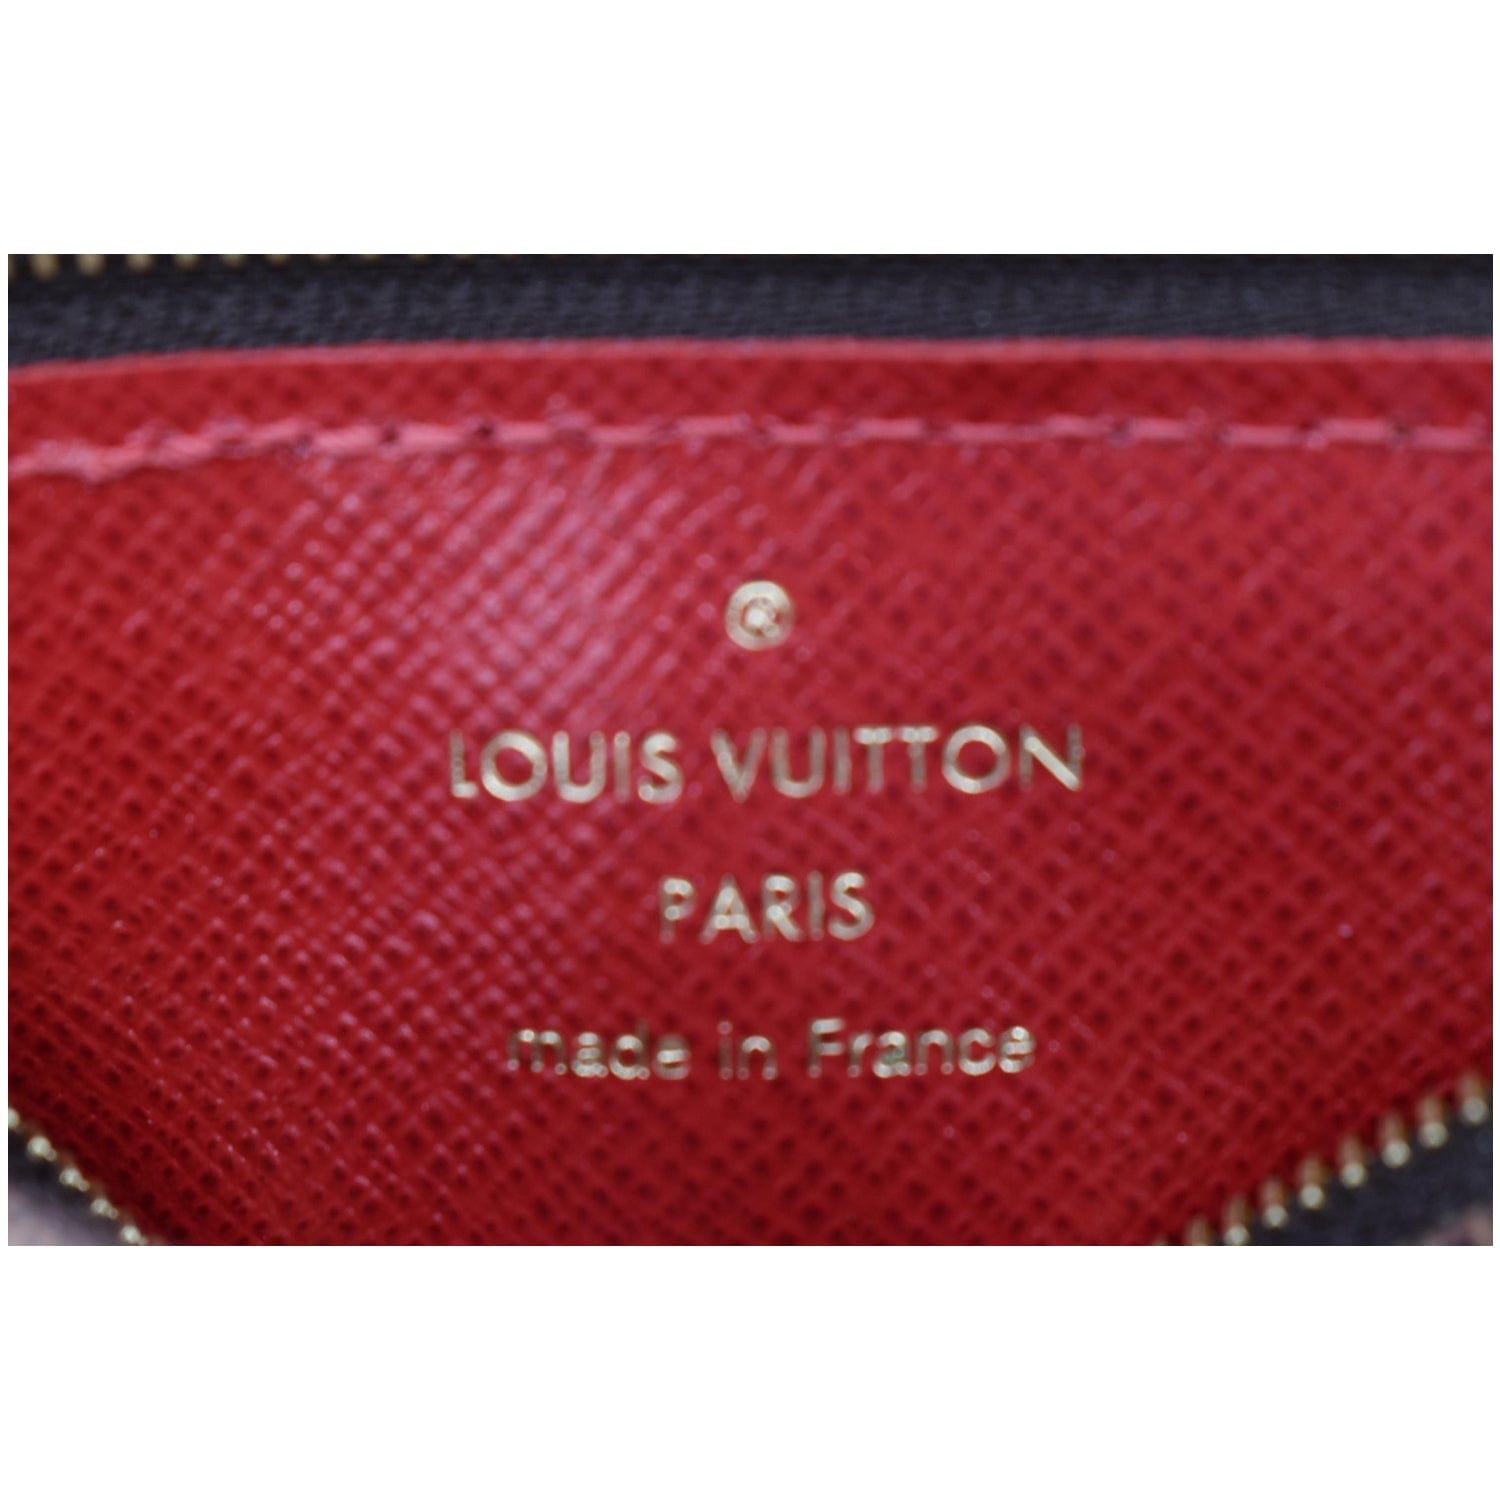 Louis Vuitton Monogram Card Holder Recto Verso 2020-21FW, Brown